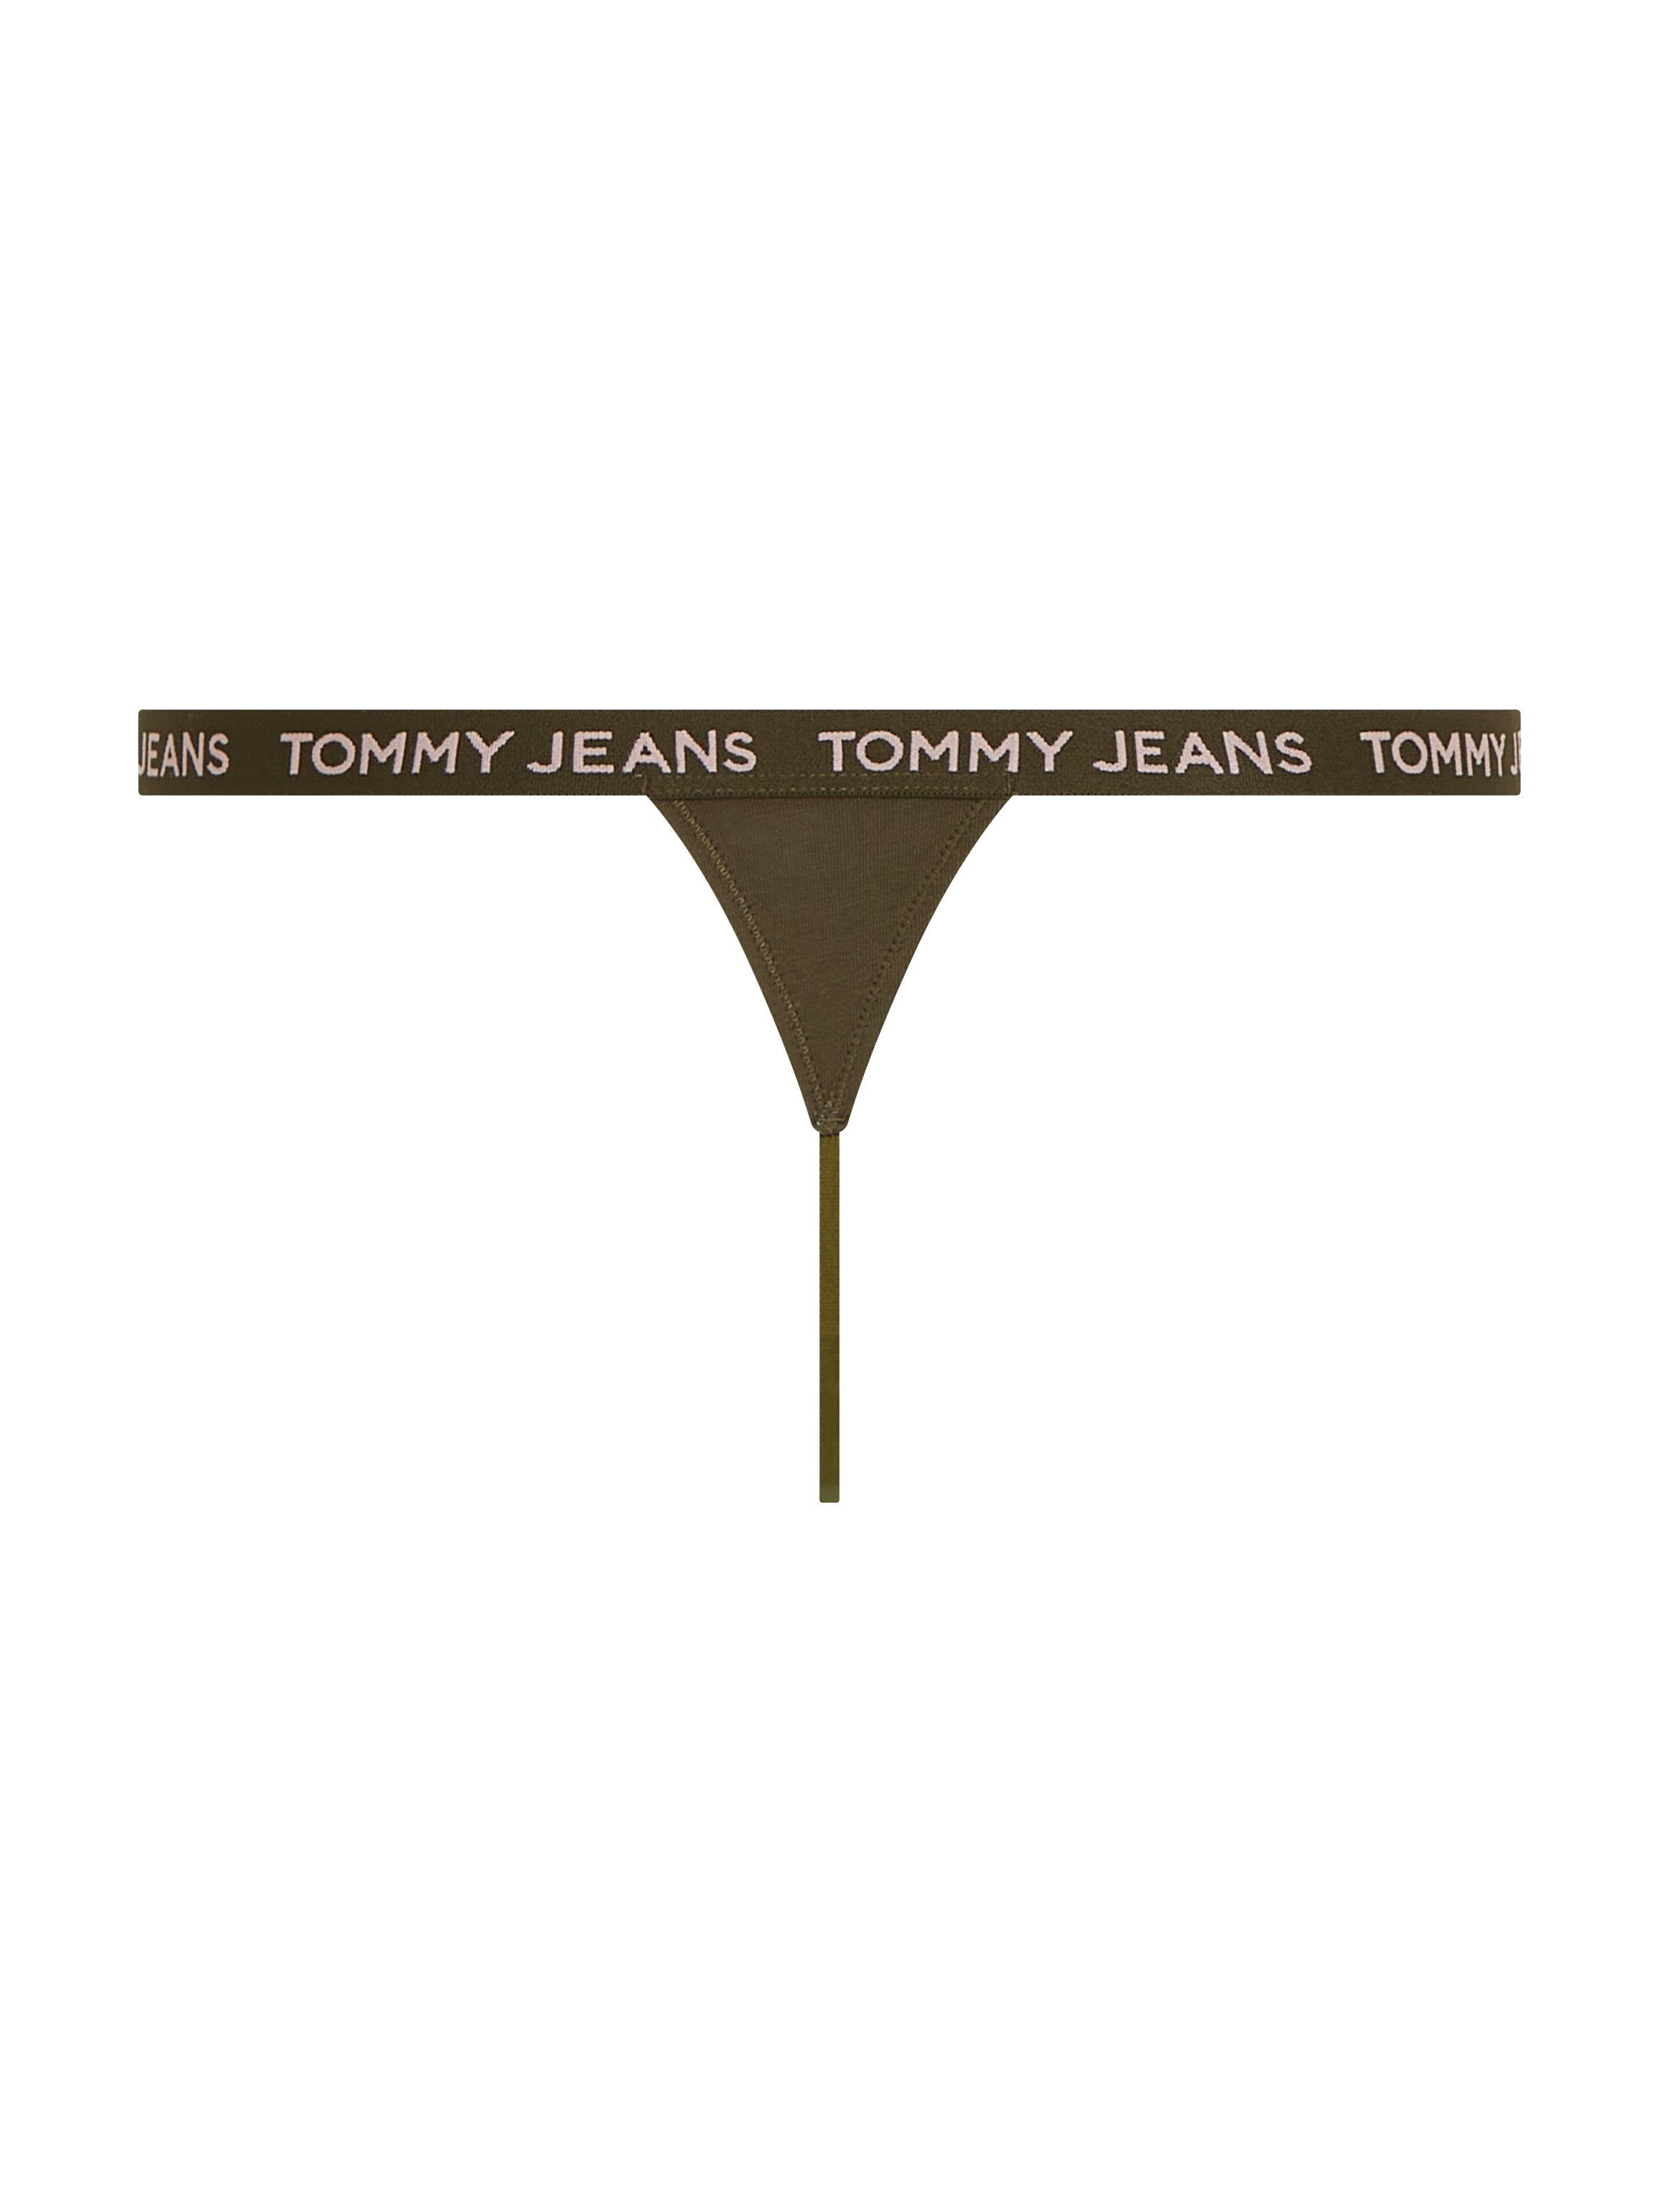 Tommy Hilfiger Underwear String 3P STRING THONG (Set van 3)